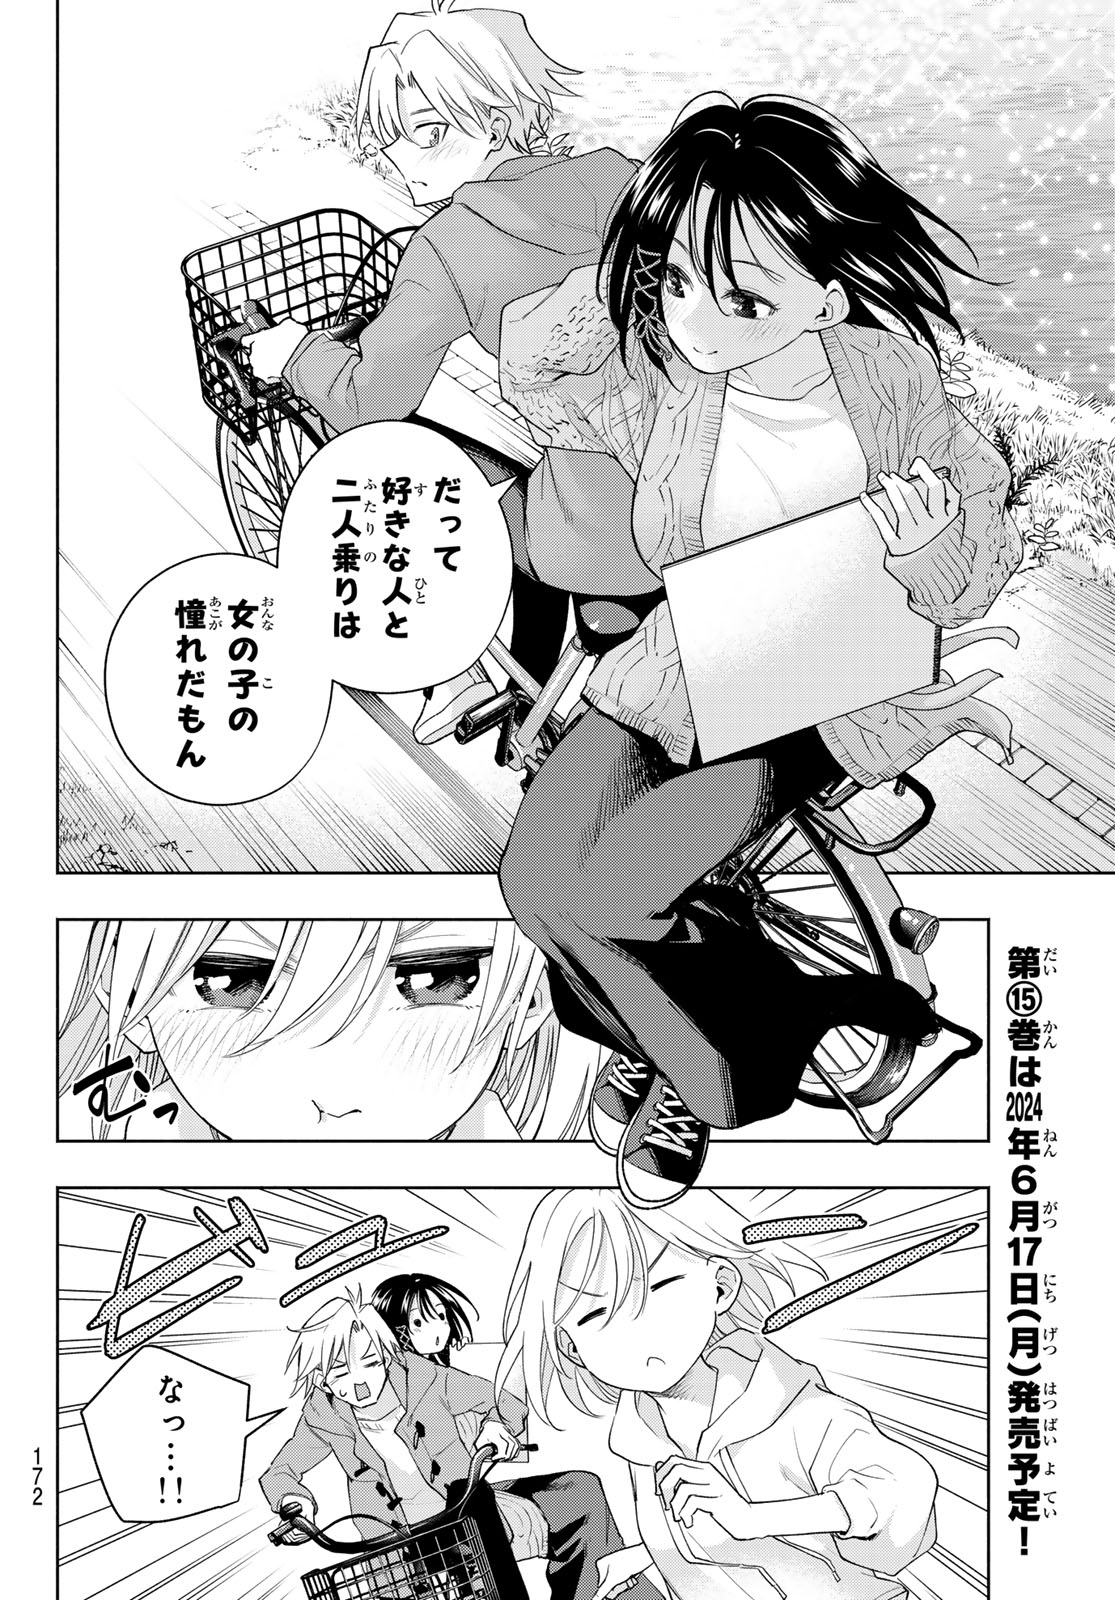 Amagami-san Chi no Enmusubi - Chapter 131 - Page 8